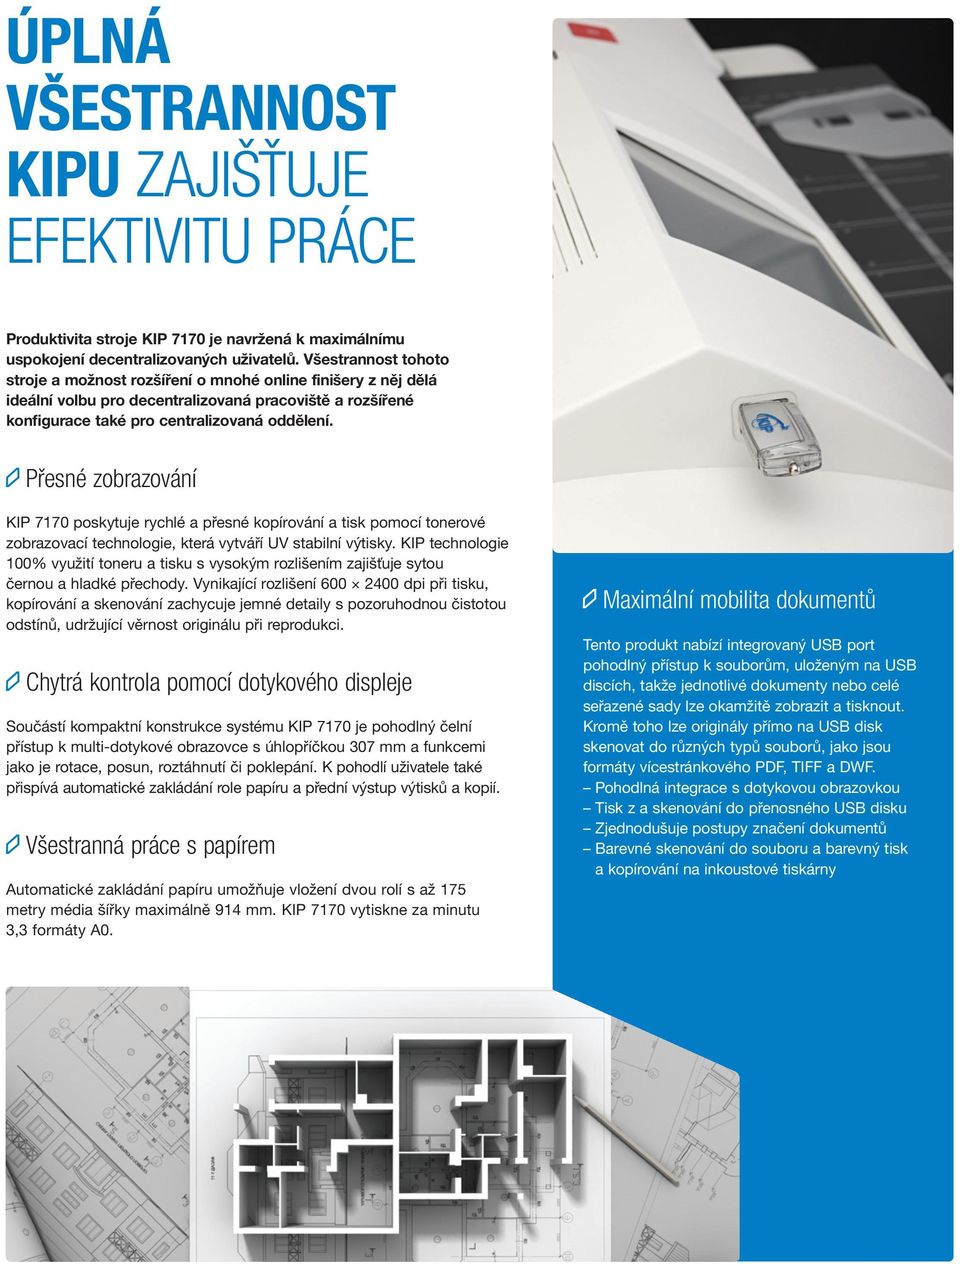 Přesné zobrazování KIP 7170 poskytuje rychlé a přesné kopírování a tisk pomocí tonerové zobrazovací technologie, která vytváří UV stabilní výtisky.